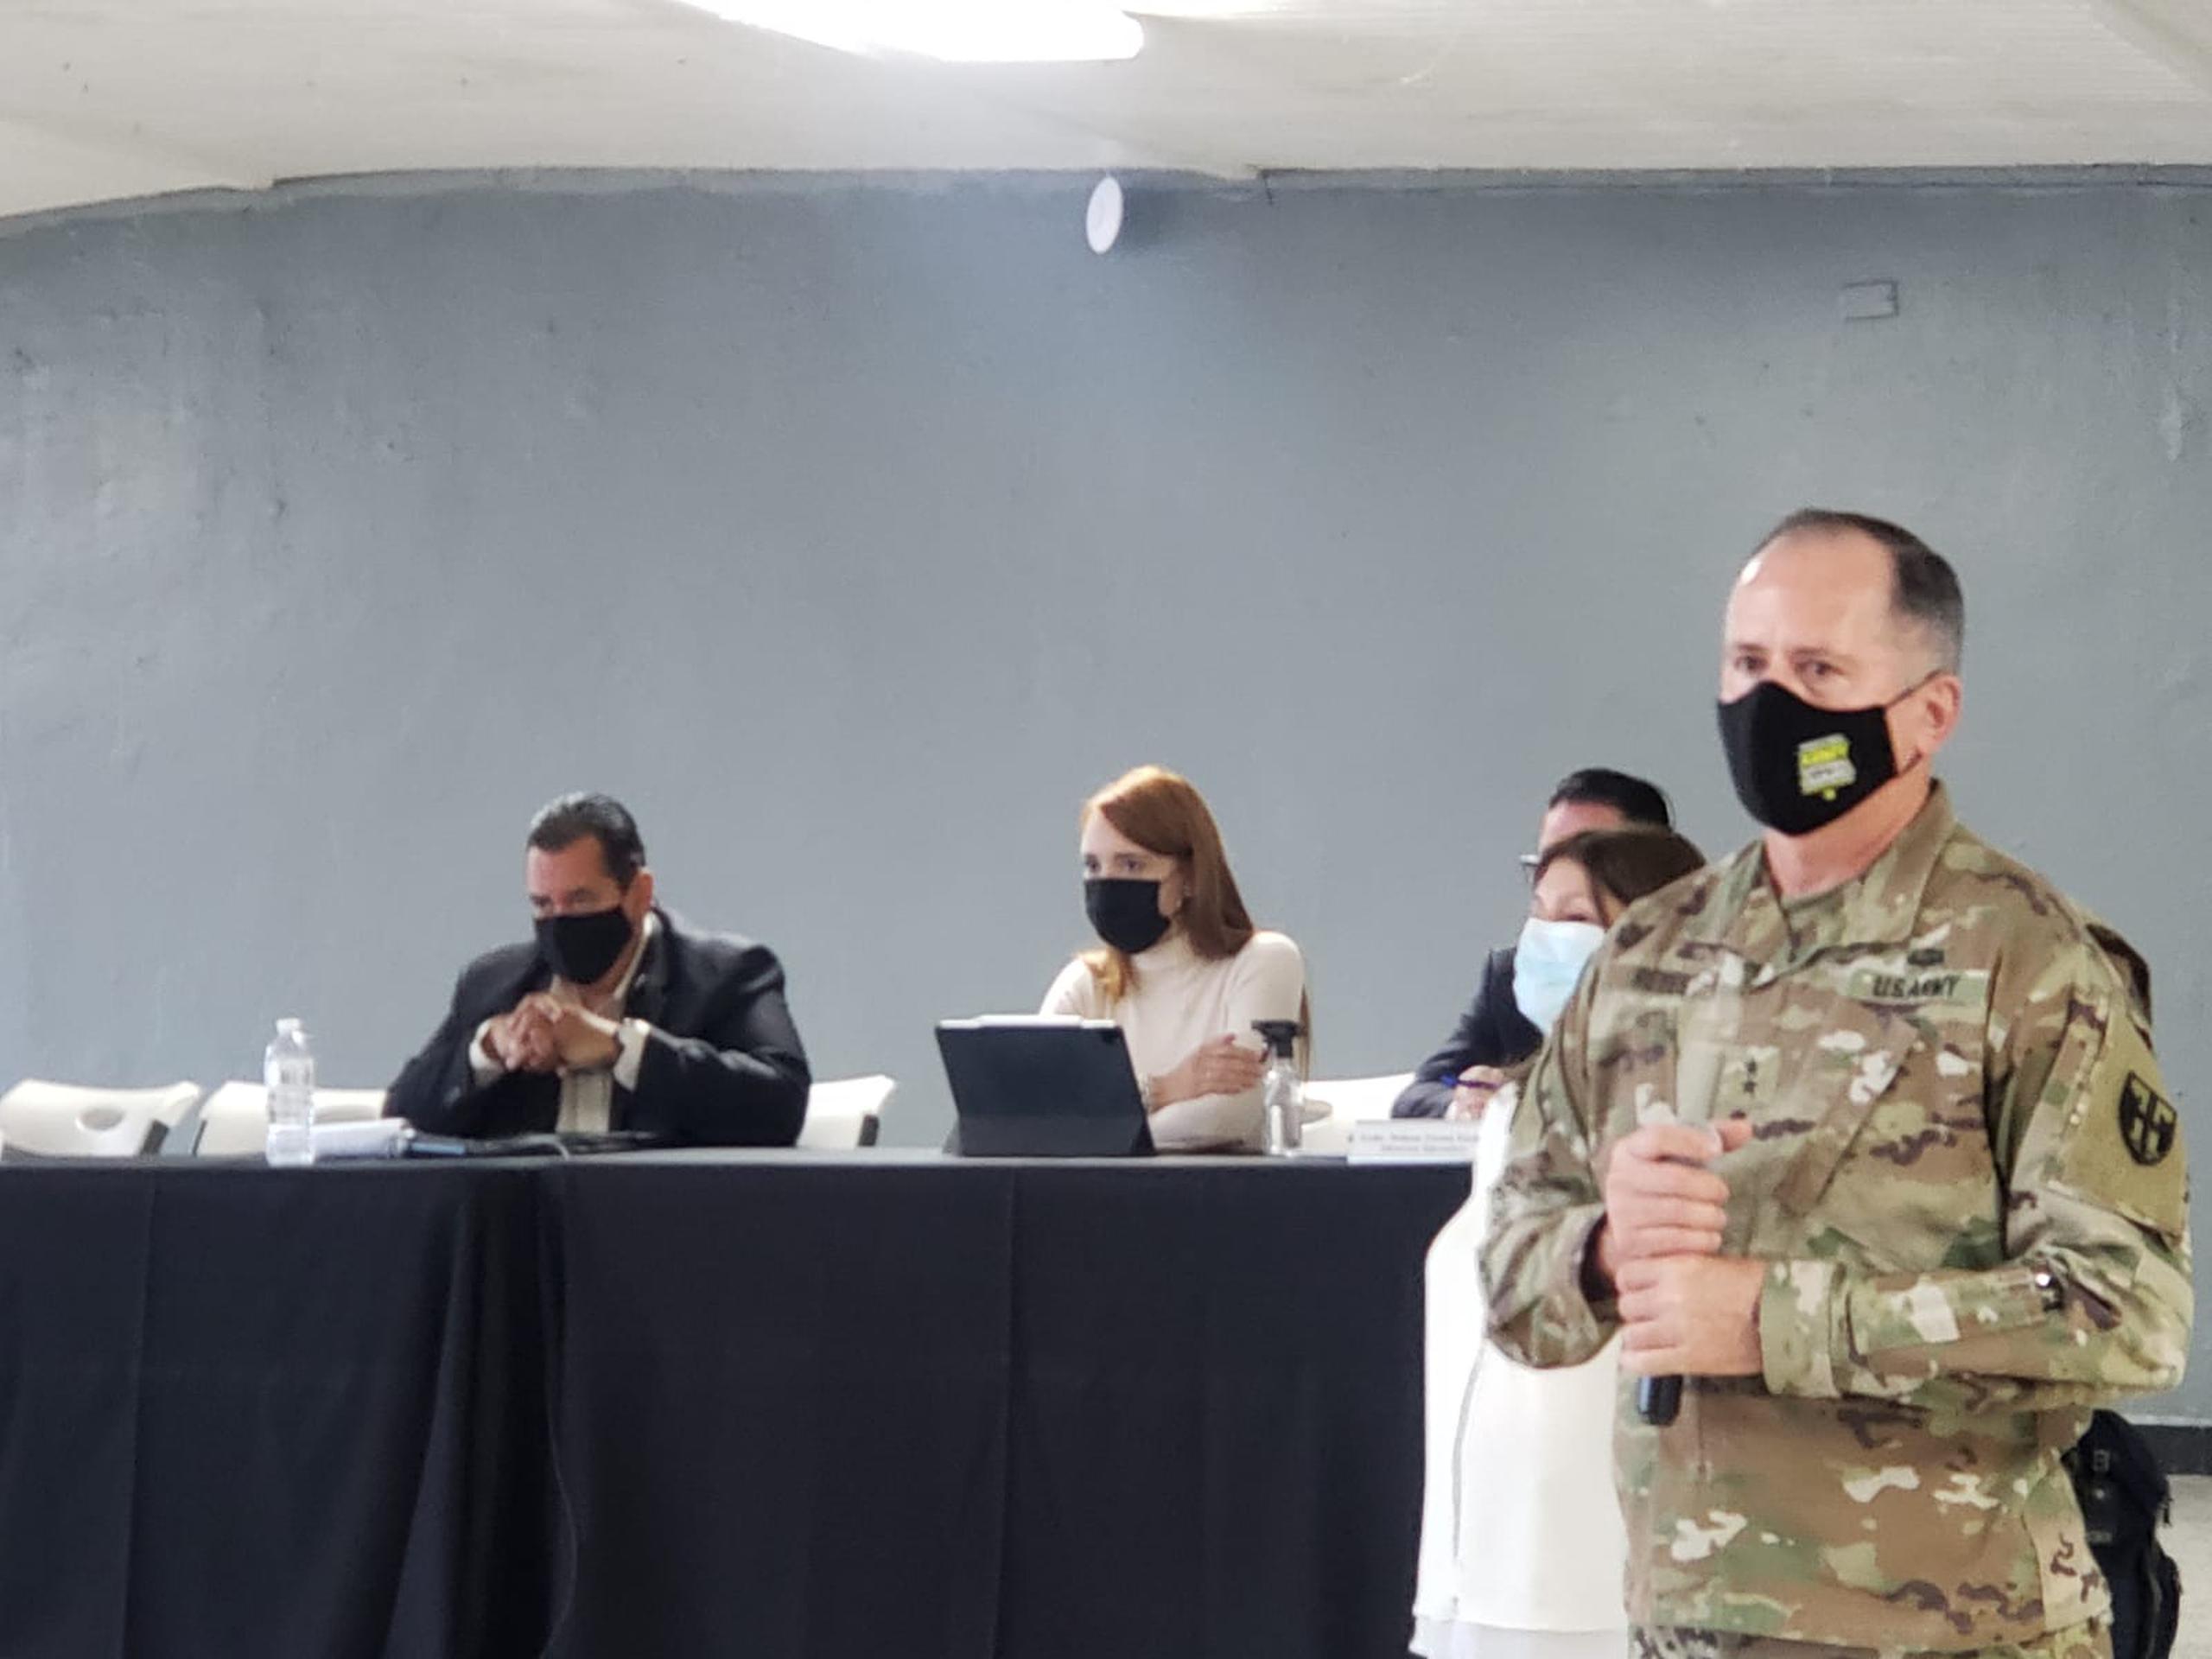 El ayudante general de la Guardia Nacional, José Reyes, indicó que las reuniones buscan organizar y preparar el camino para impactar a la población de la fase 1B.